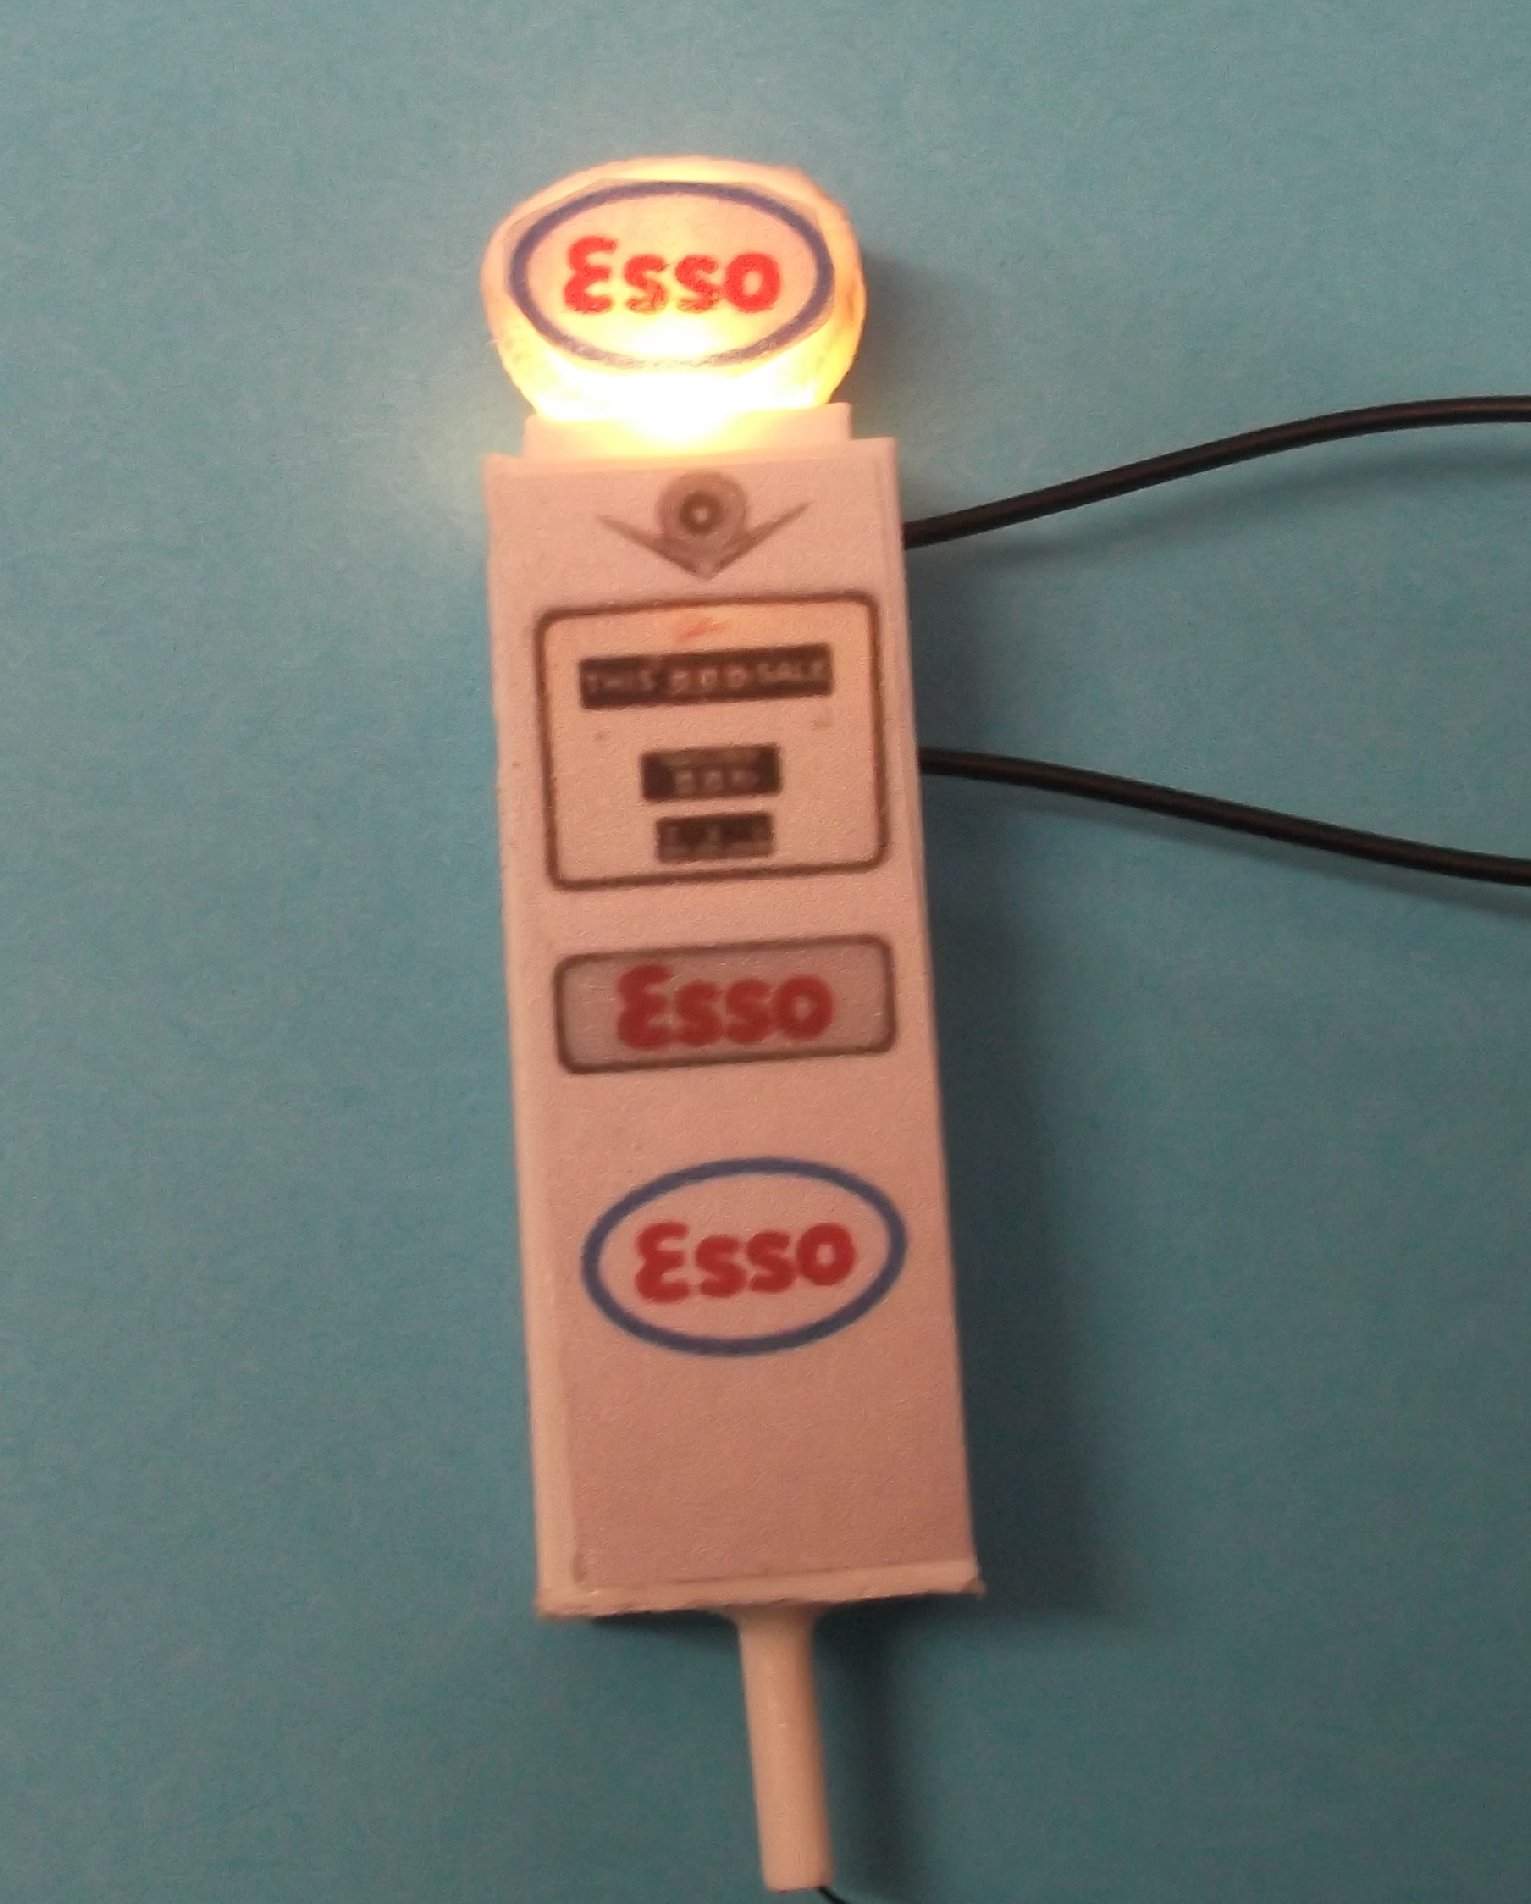 Esso Illuminated Petrol Pump